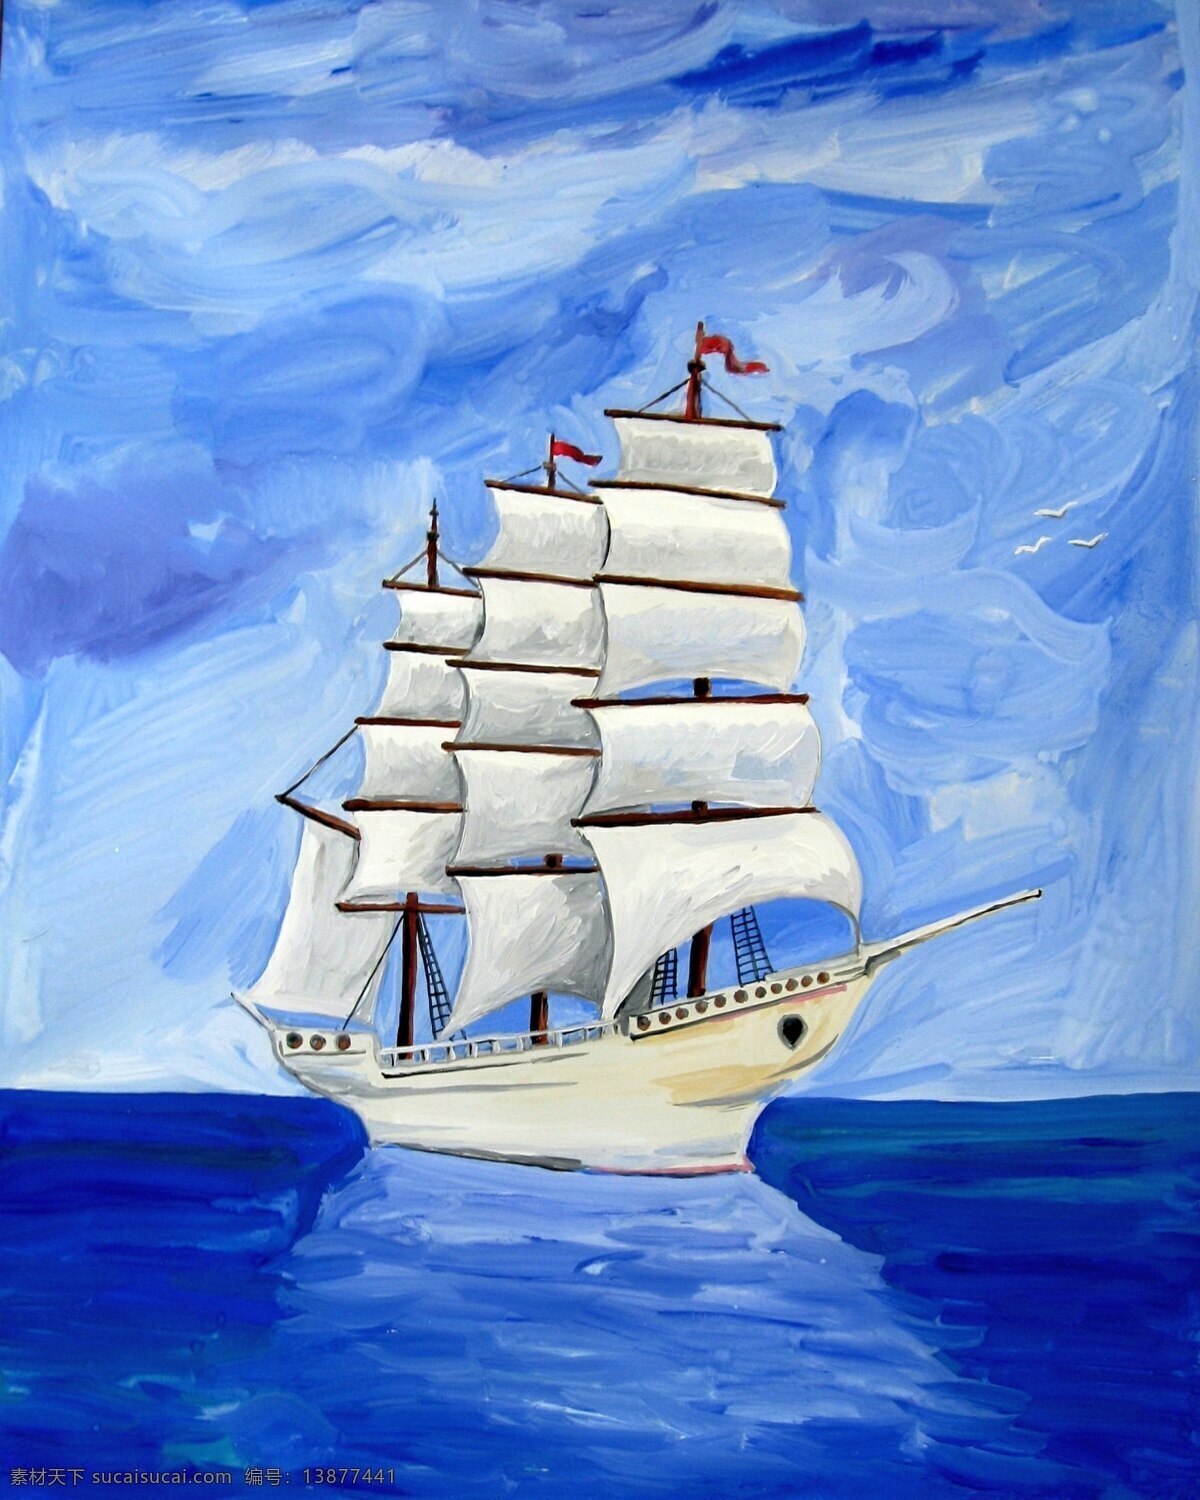 帆船 船帆 海上 船只 航行 海洋 海水 蓝天 海上帆船 白色帆船 帆船画 绘画 文化艺术 绘画书法